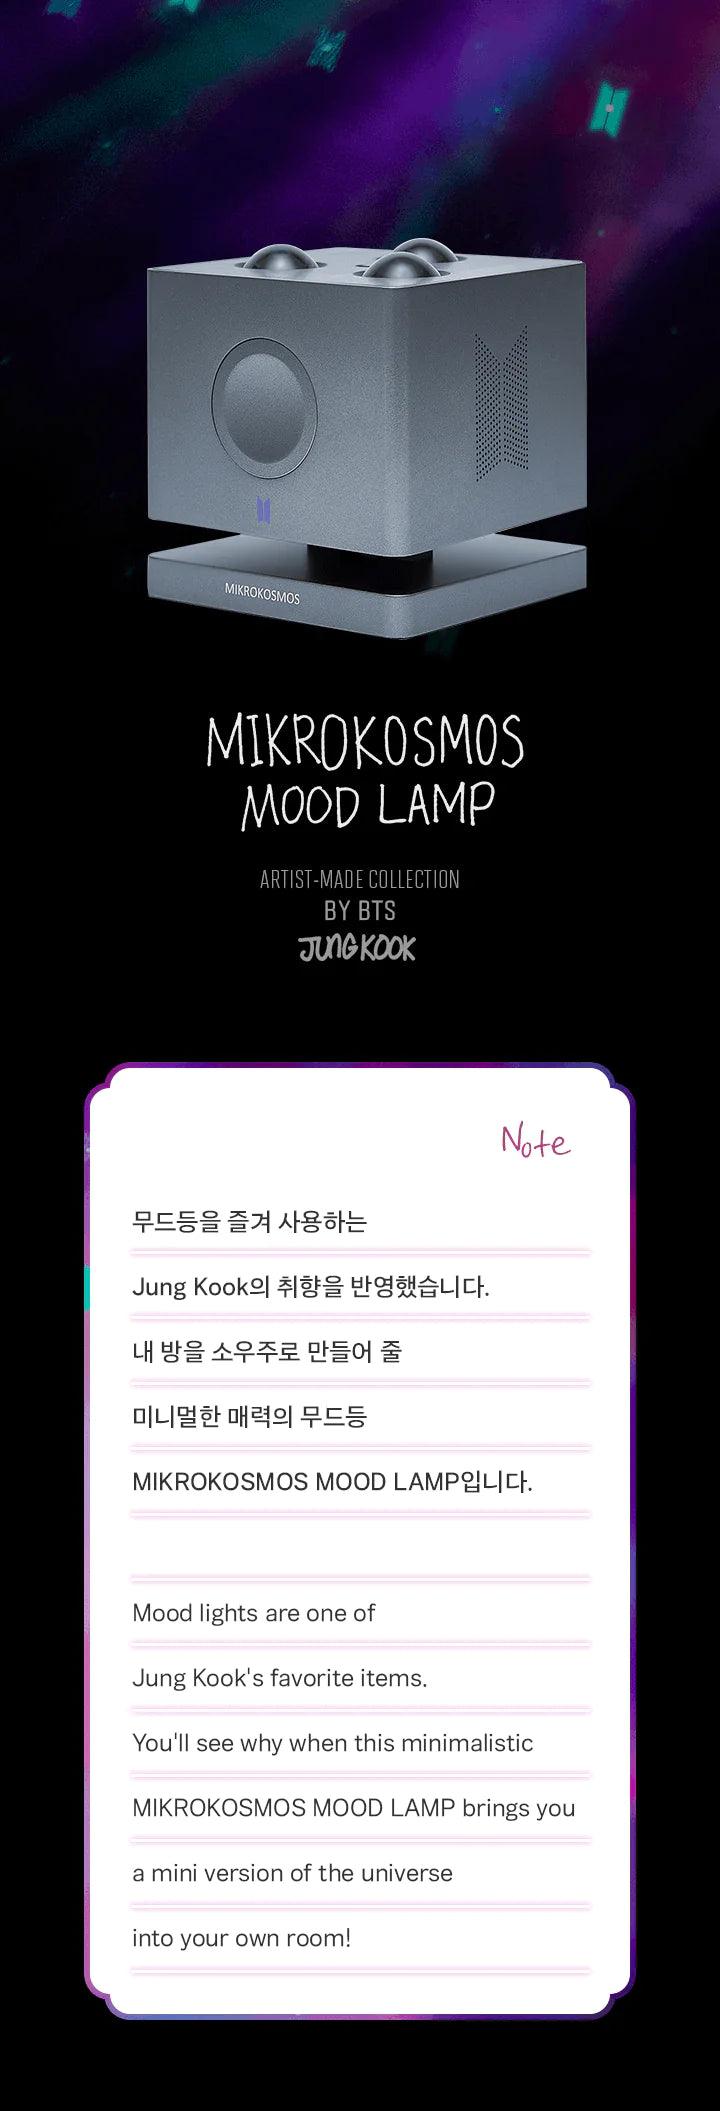 [2nd PRE ORDER] BTS - ARTIST-MADE COLLECTION by JUNGKOOK - MIKROKOSMOS MOOD LAMP - KAEPJJANG SHOP (캡짱 숍)